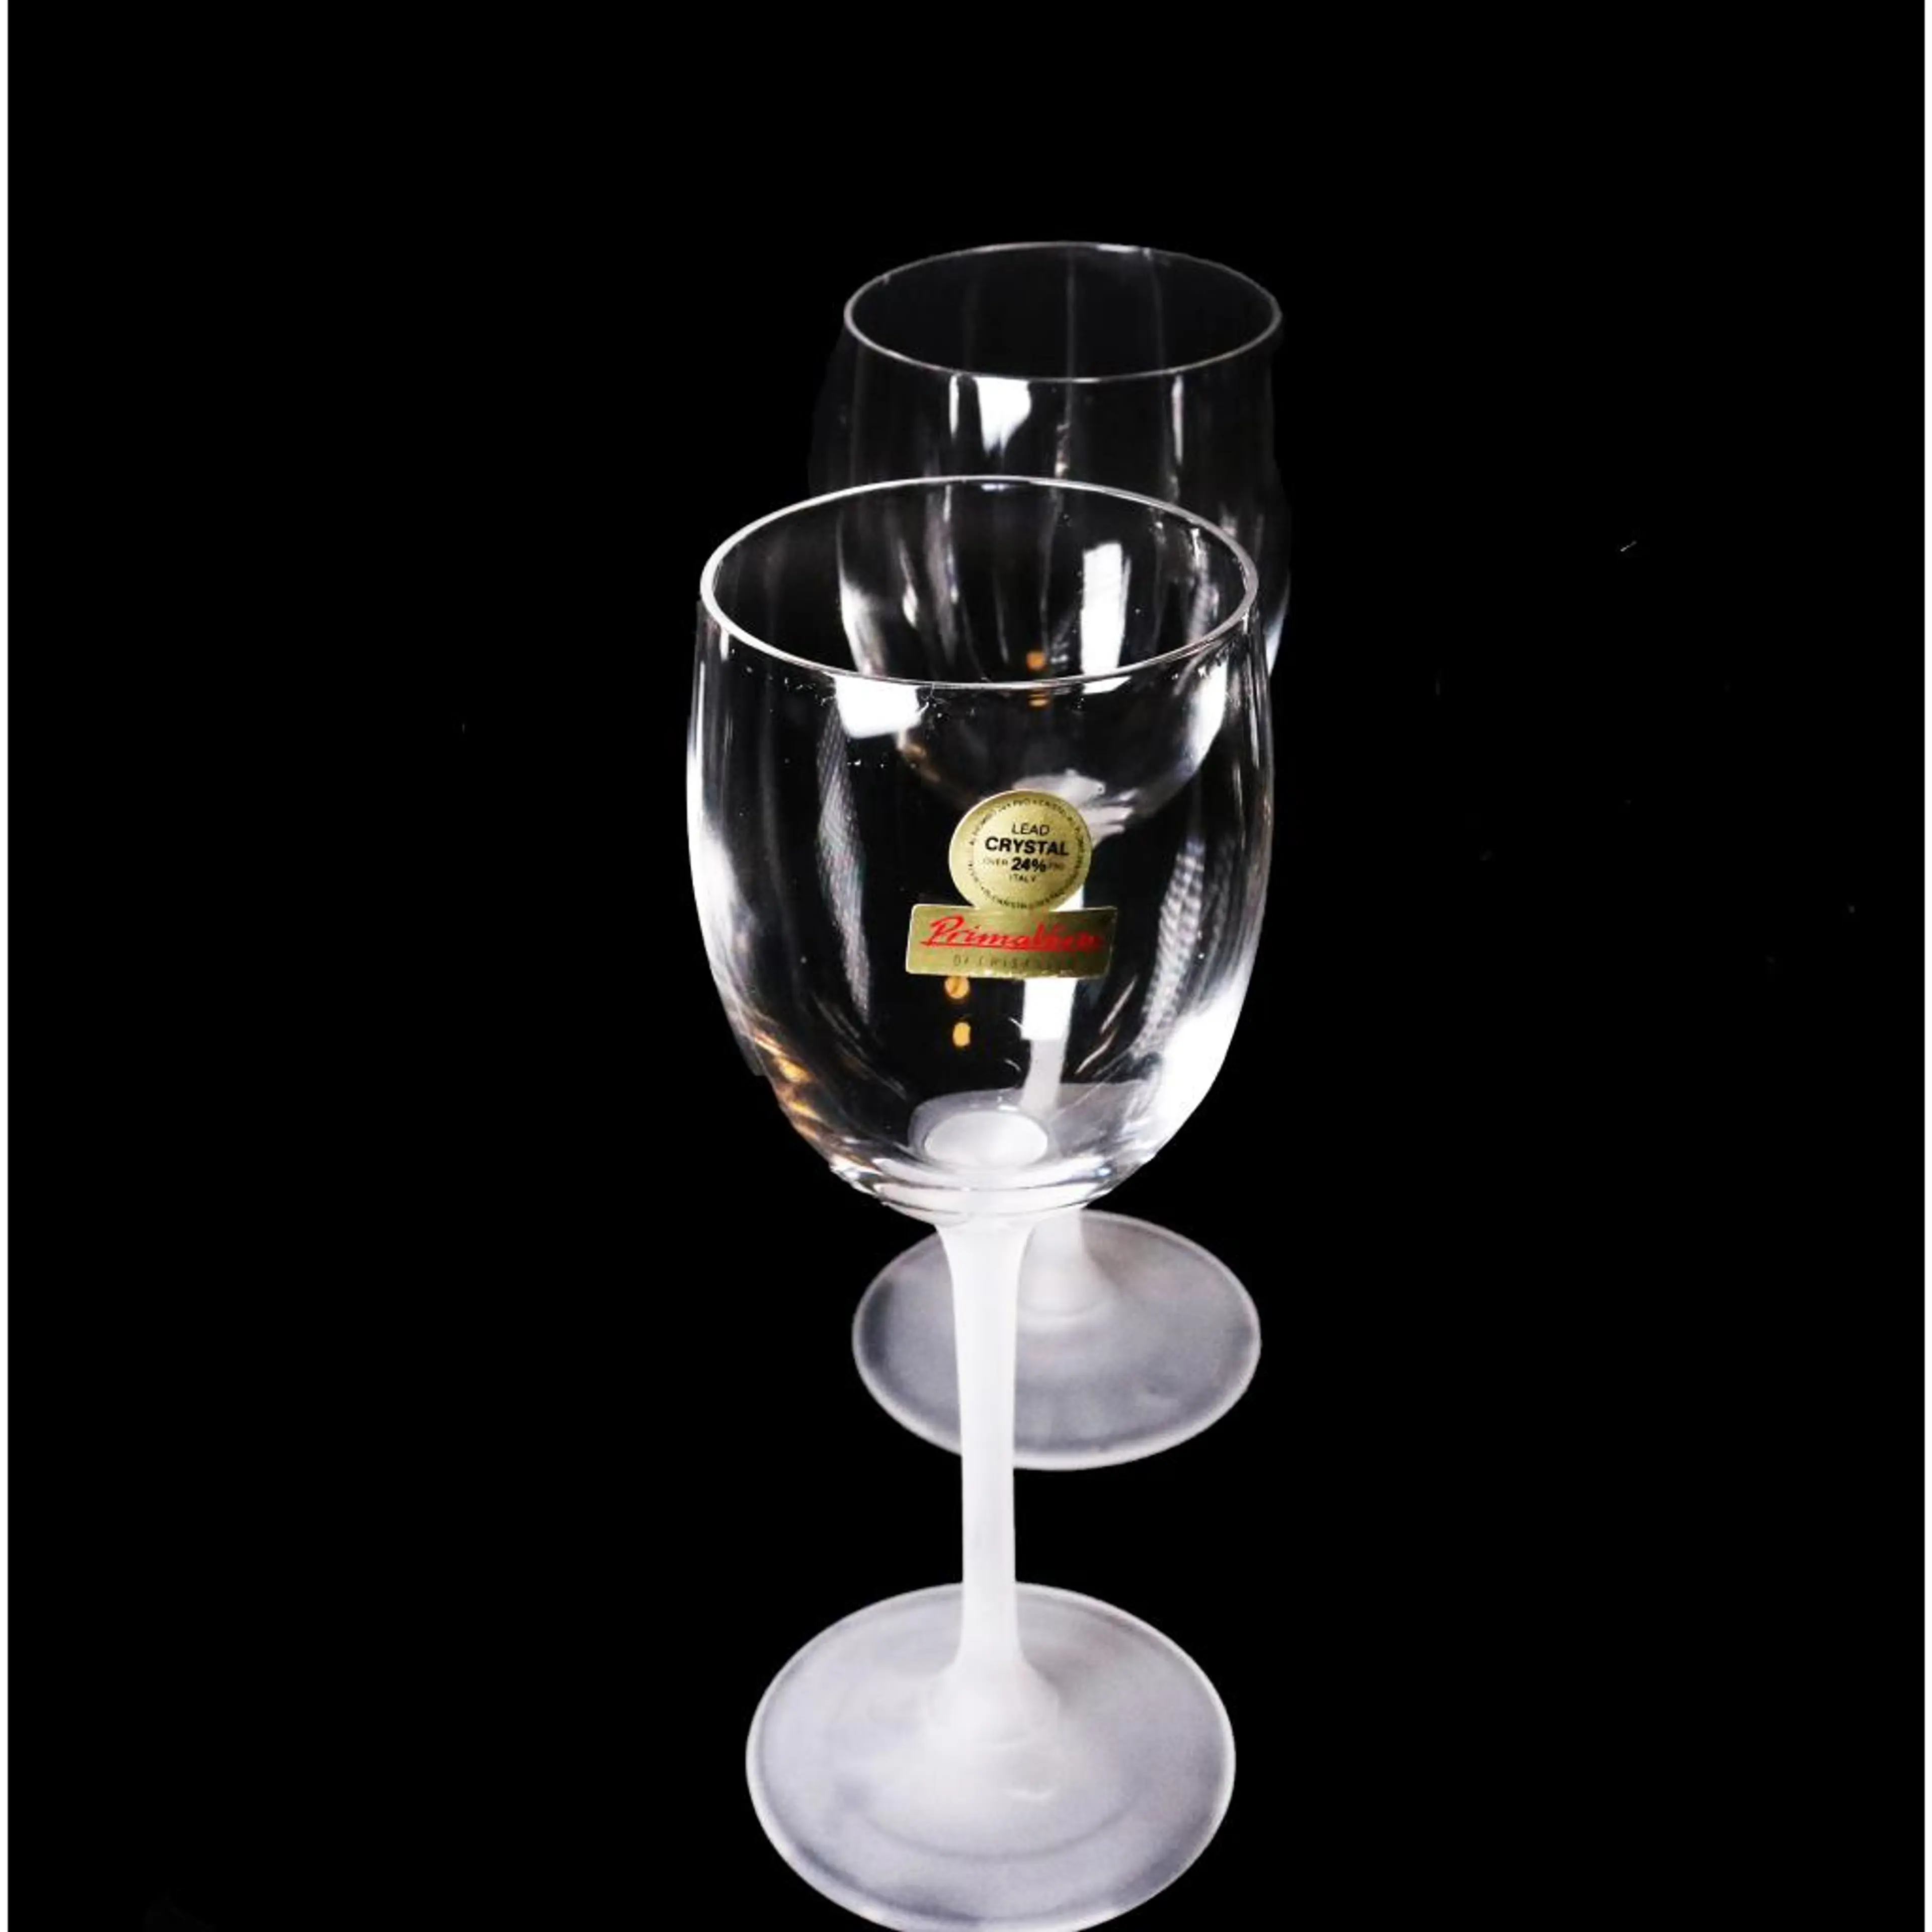 Wine Glasses 6pcs.